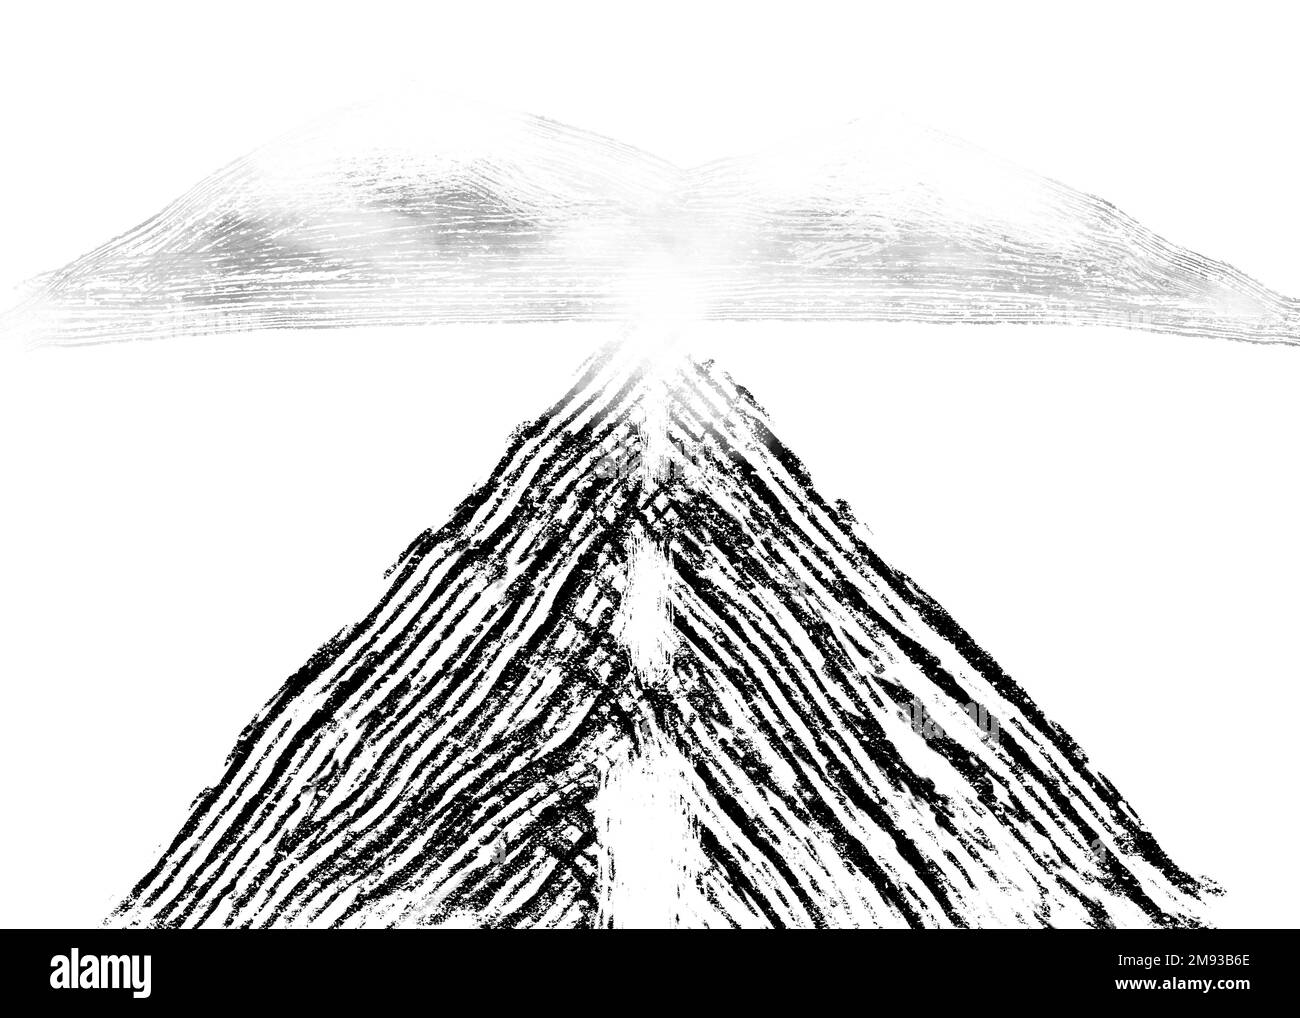 Pintura mínima en blanco y negro de una carretera que se extiende hacia las montañas nevadas en la distancia desapareciendo en la niebla nevada en un lienzo cuadrado Foto de stock